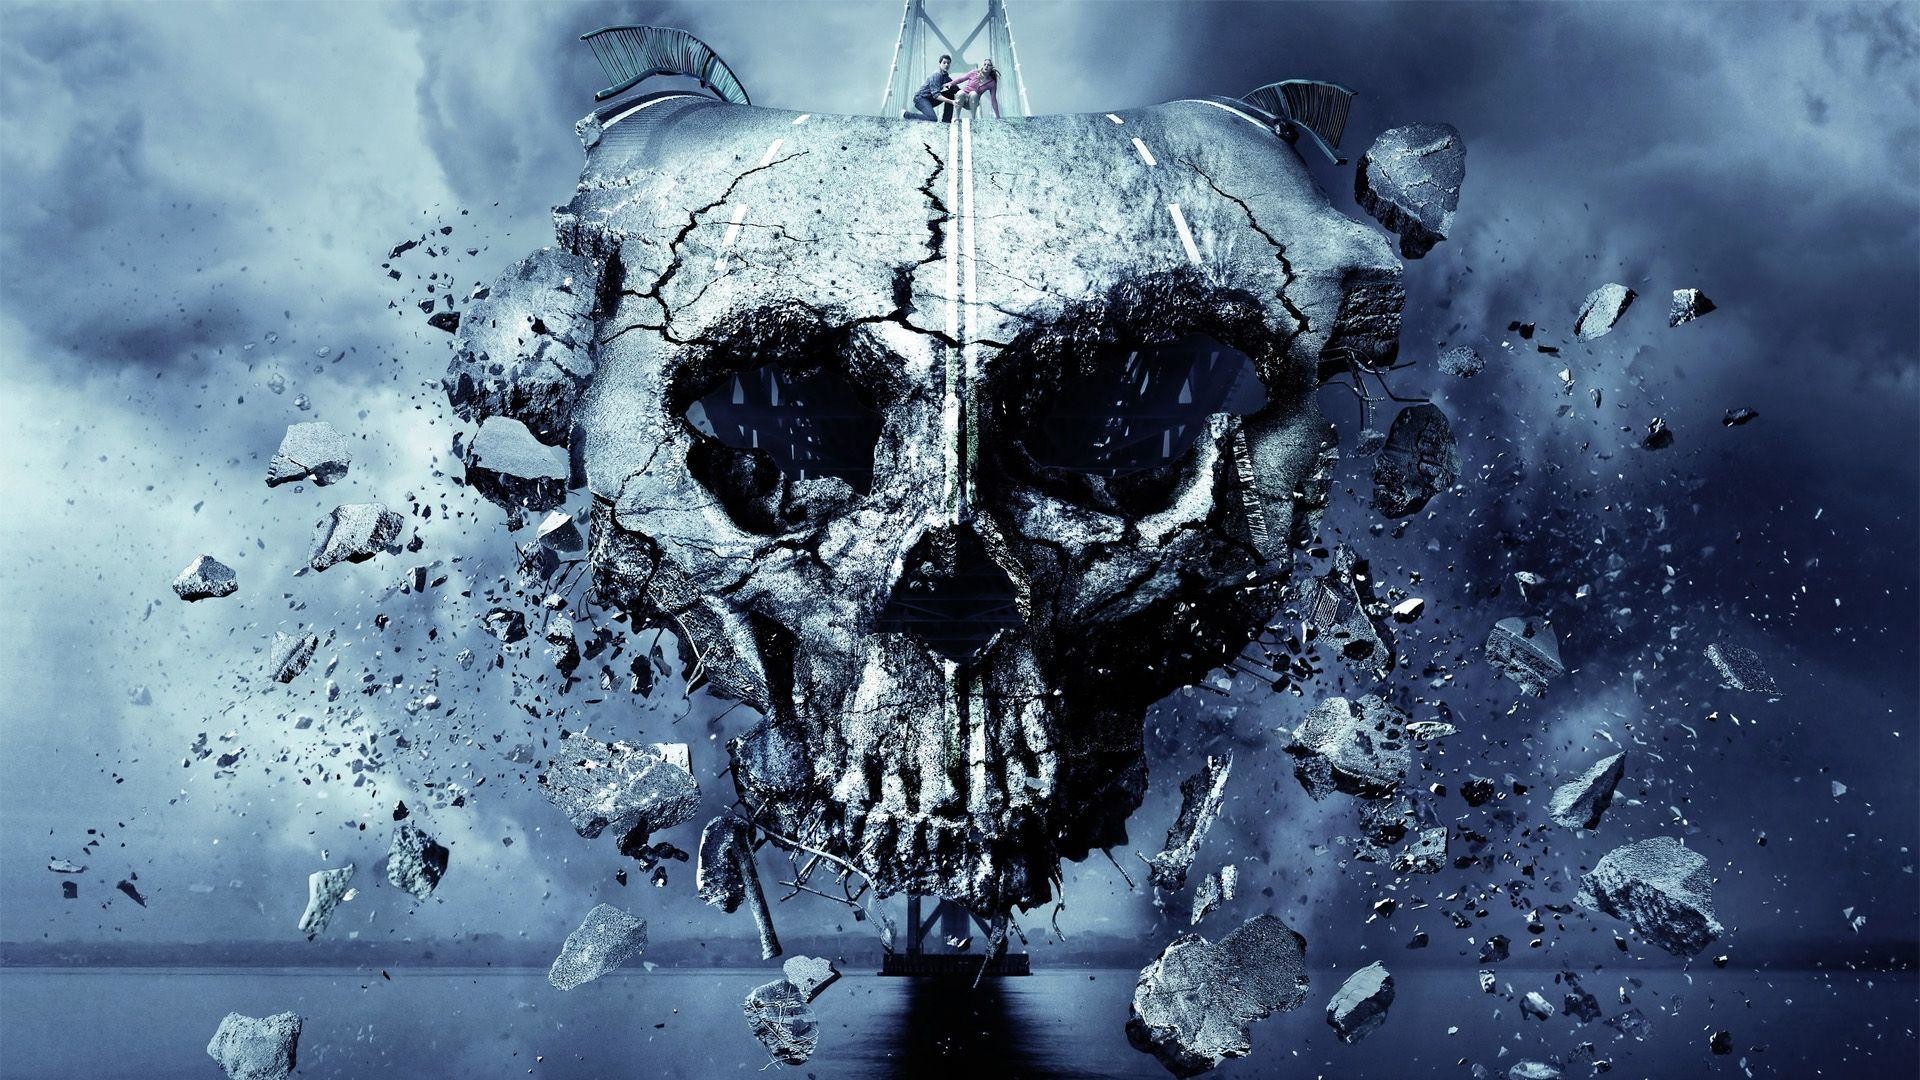 HD Skull Wallpaper 1080p Image